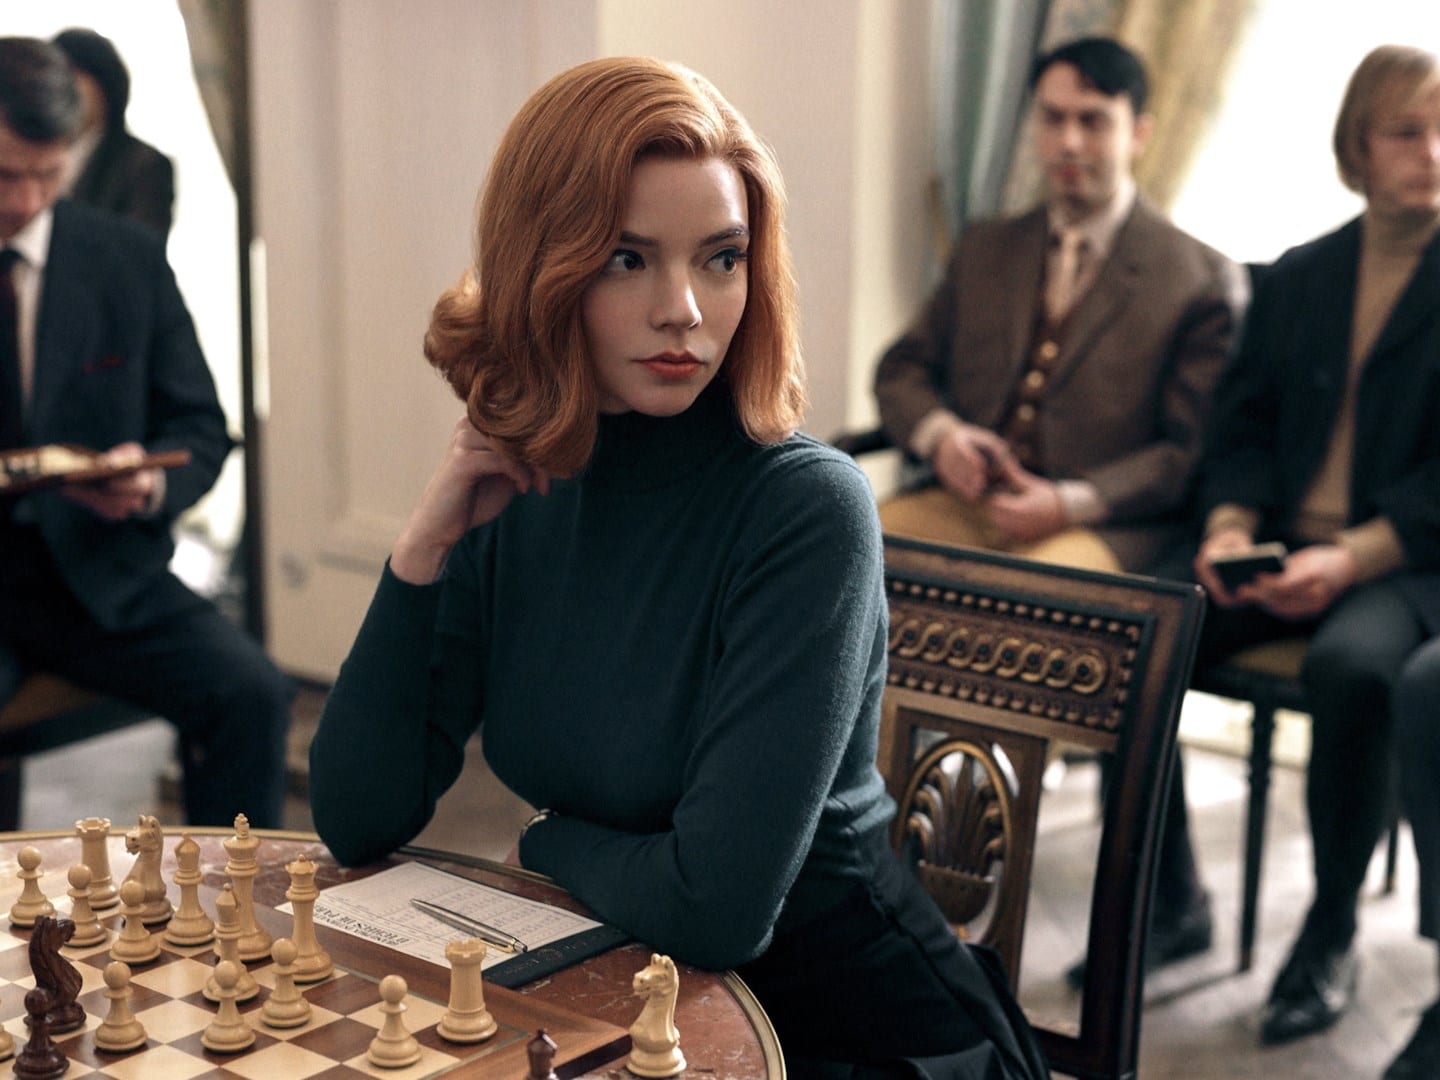 La regina degli scacchi, una scena della miniserie